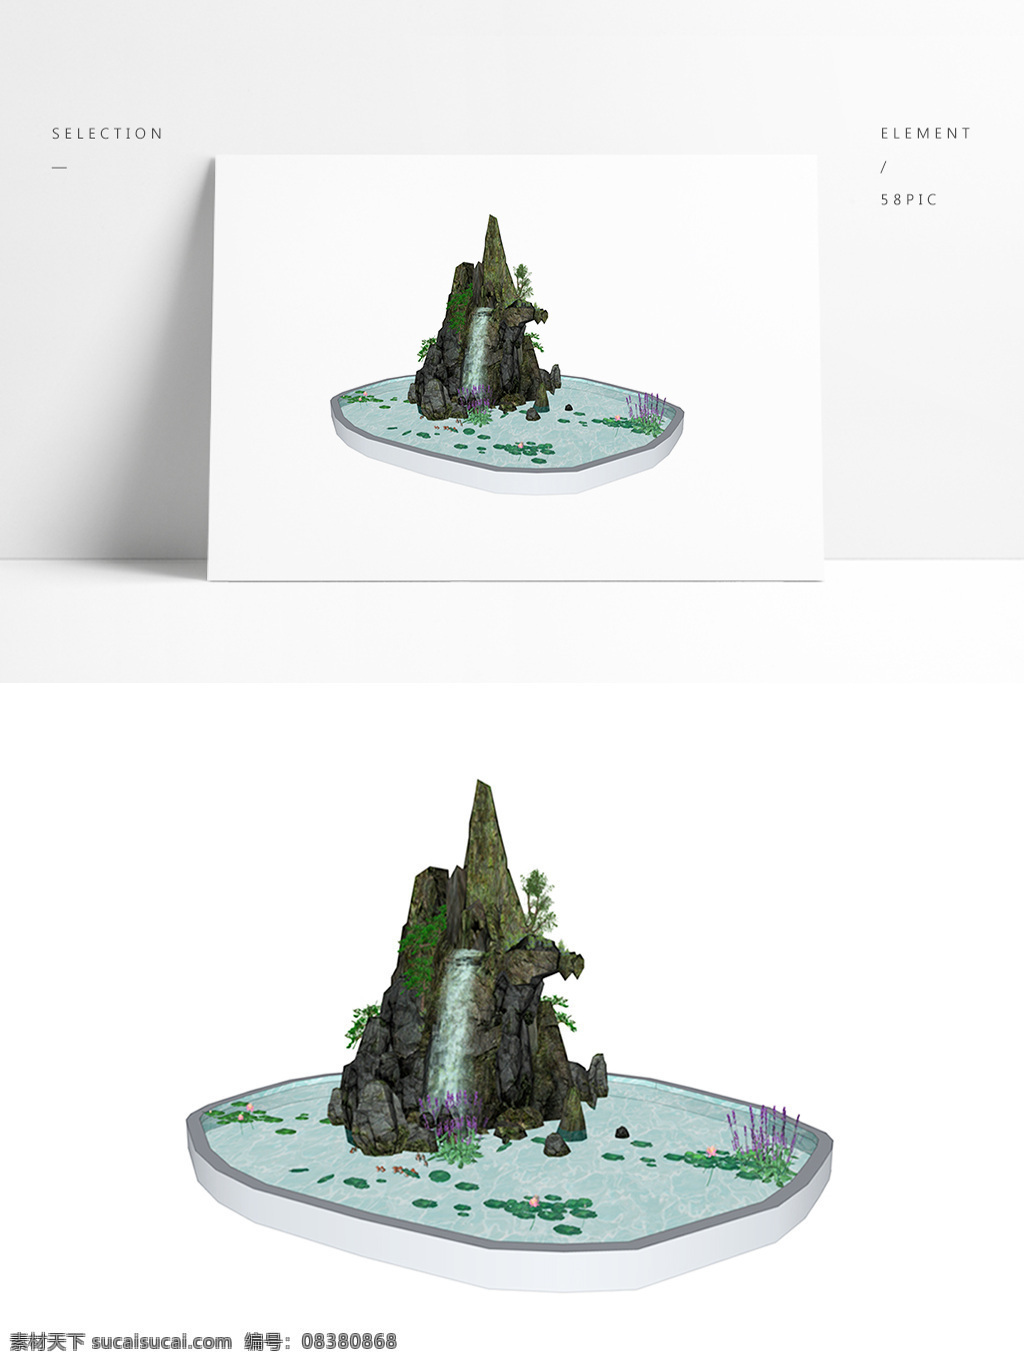 新 中式 假 山水 su 模型 园林模型 假山模型 园林 假山 中式园林 中式假山模型 水景模型